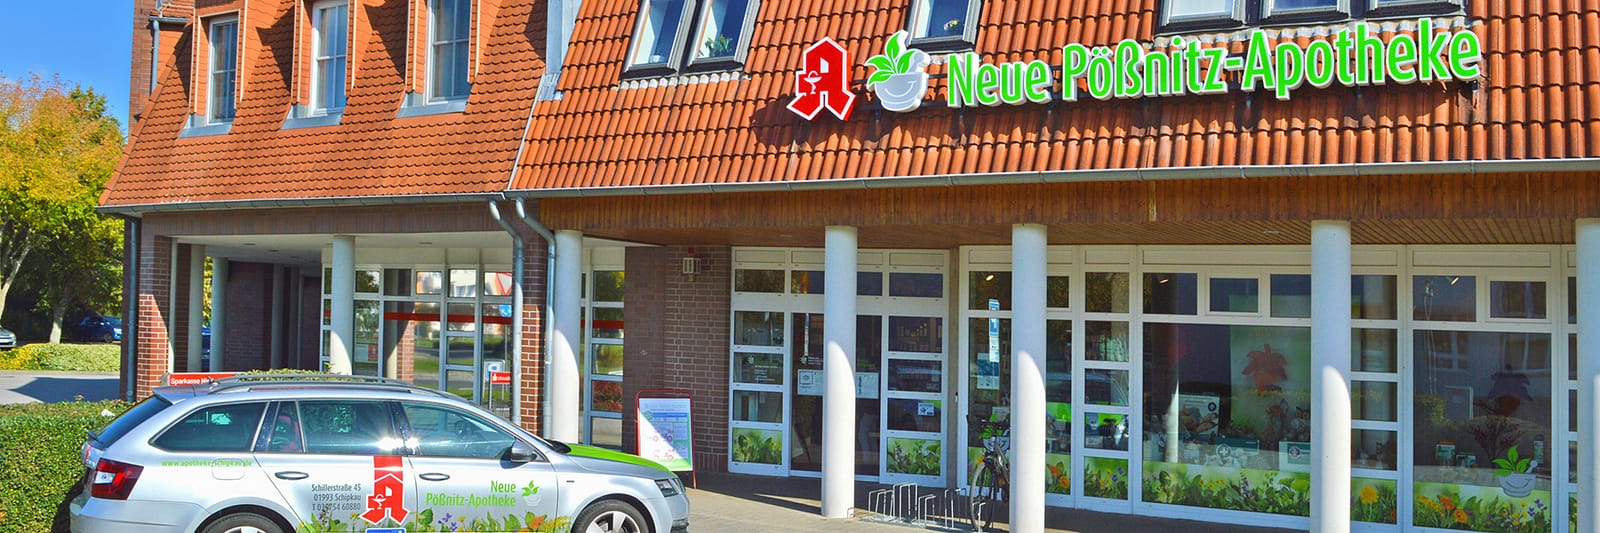 Herzlich willkommen bei Ihrer Neuen Pößnitz-Apotheke in Schipkau